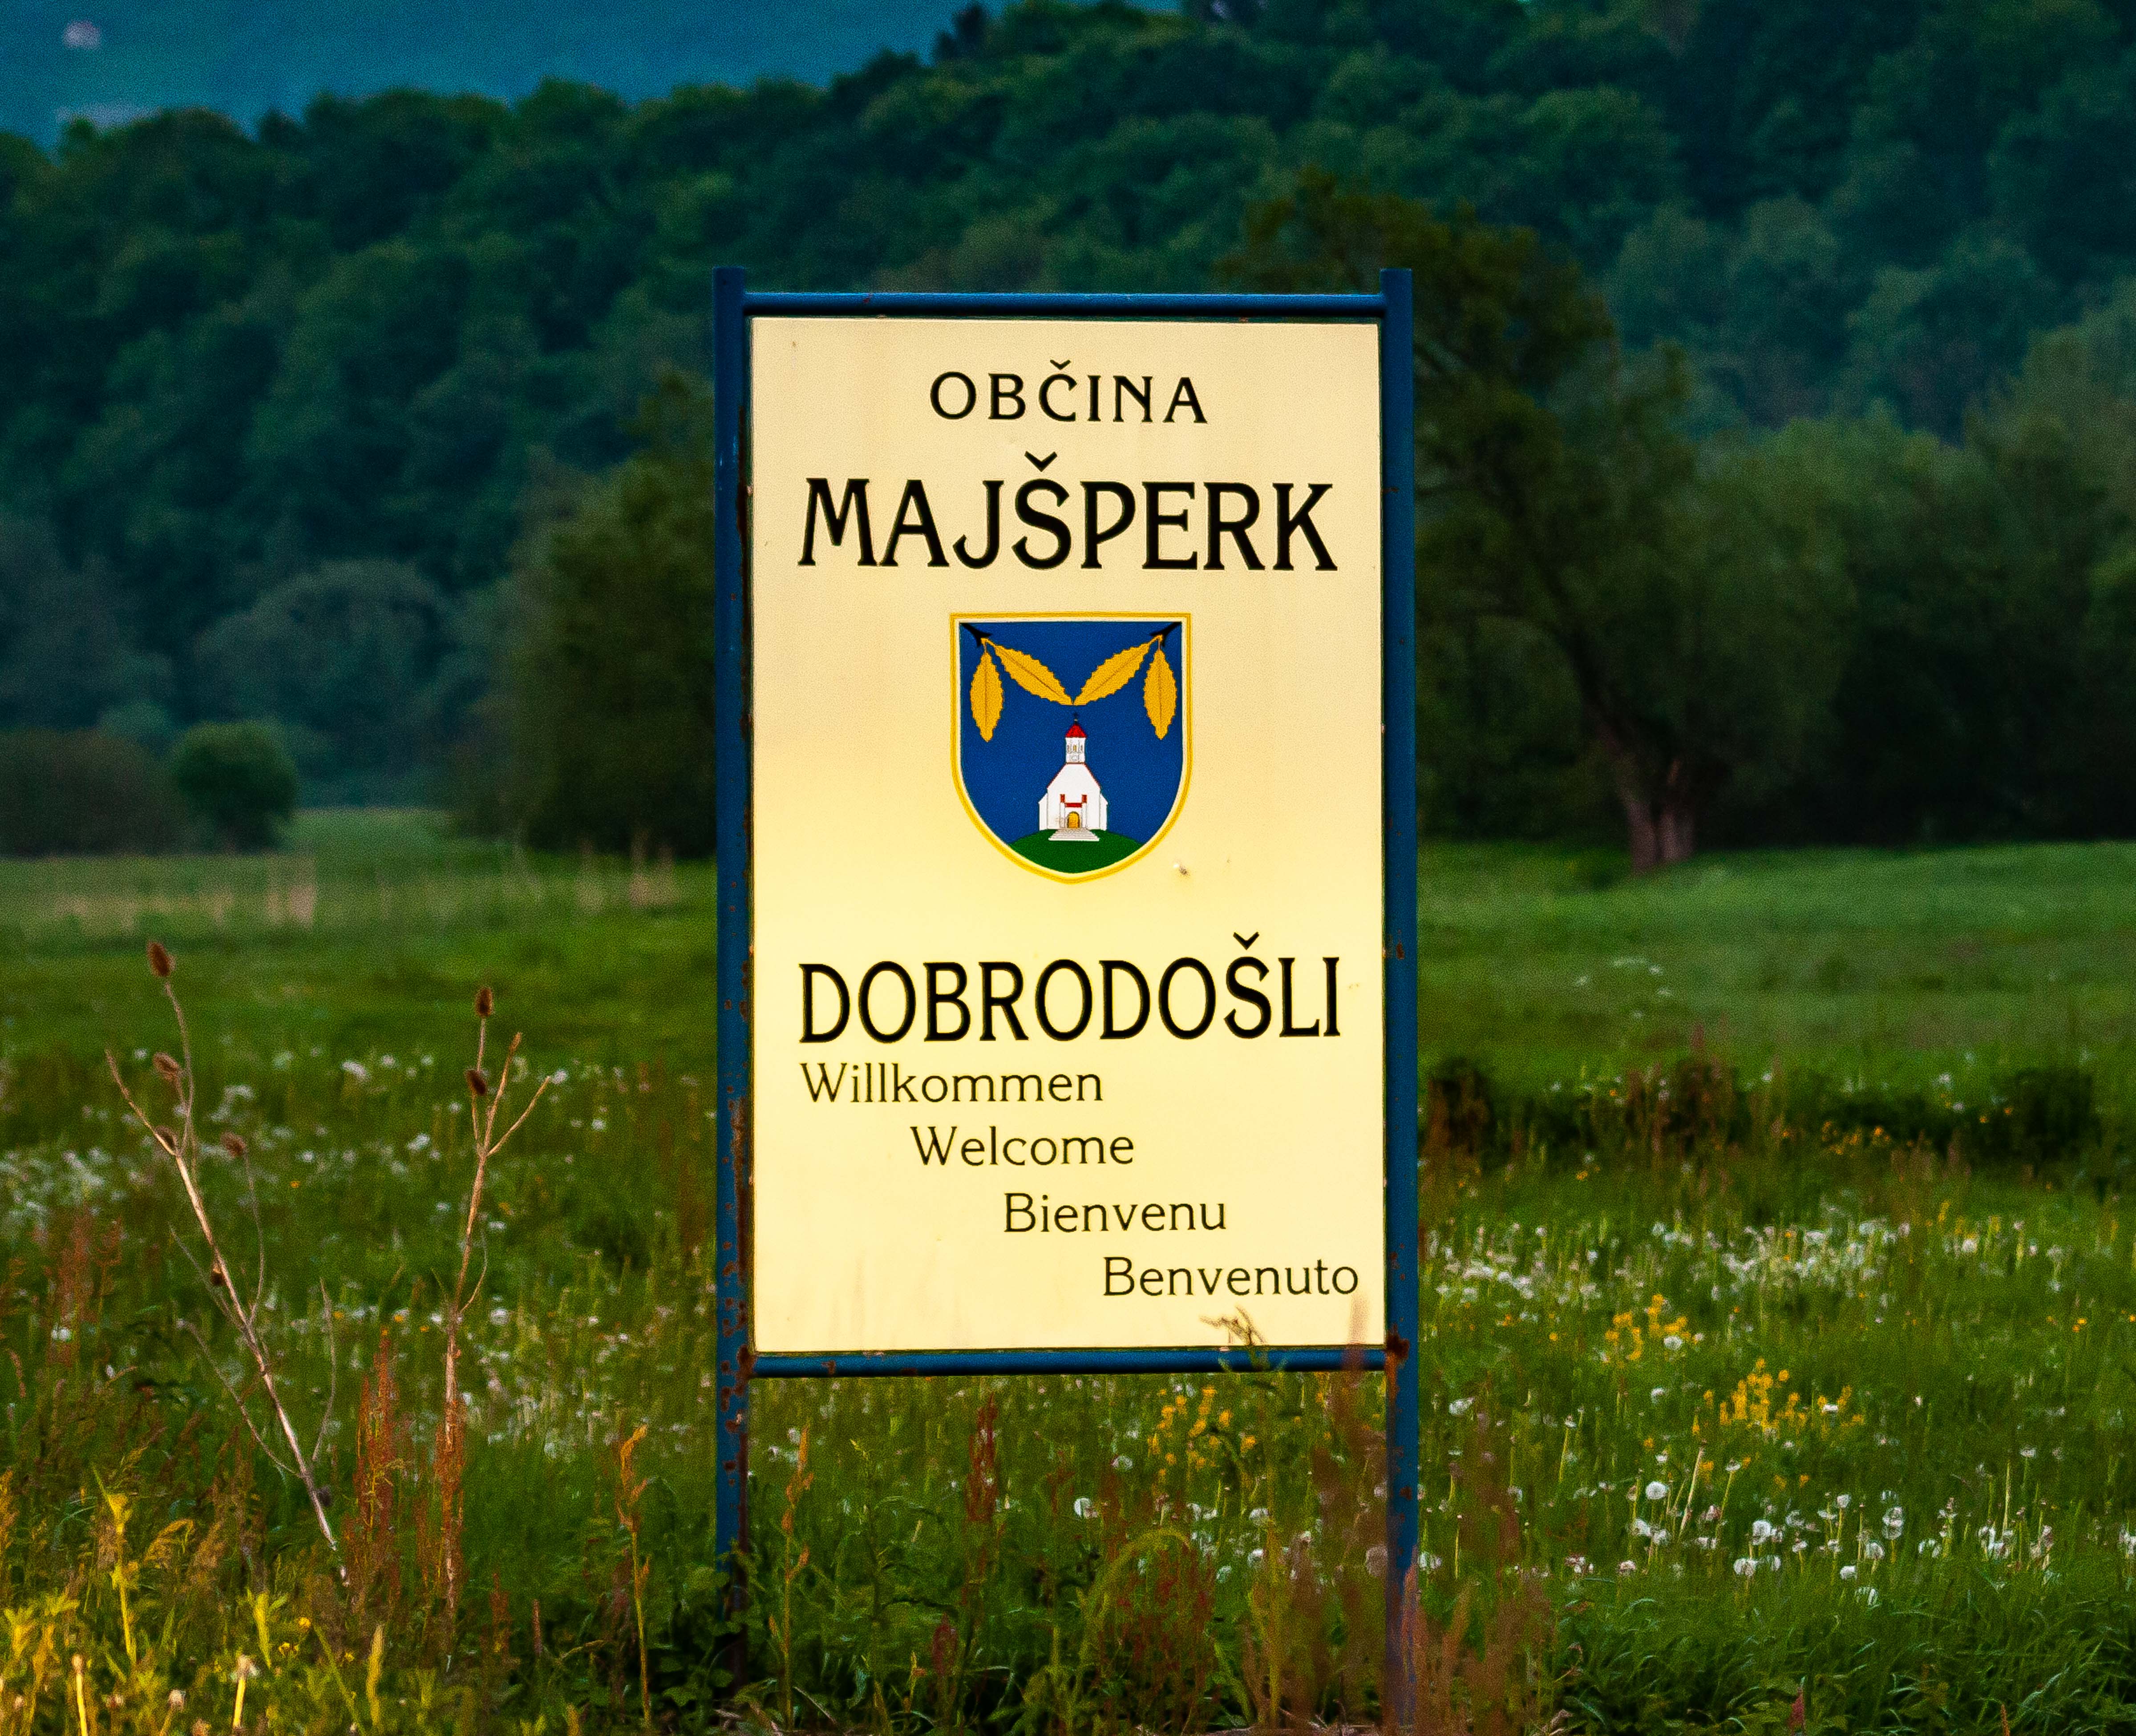 Slovenia, Majsperk Prov, Welcome To Majsperk Obcina, 2006, IMG 5519